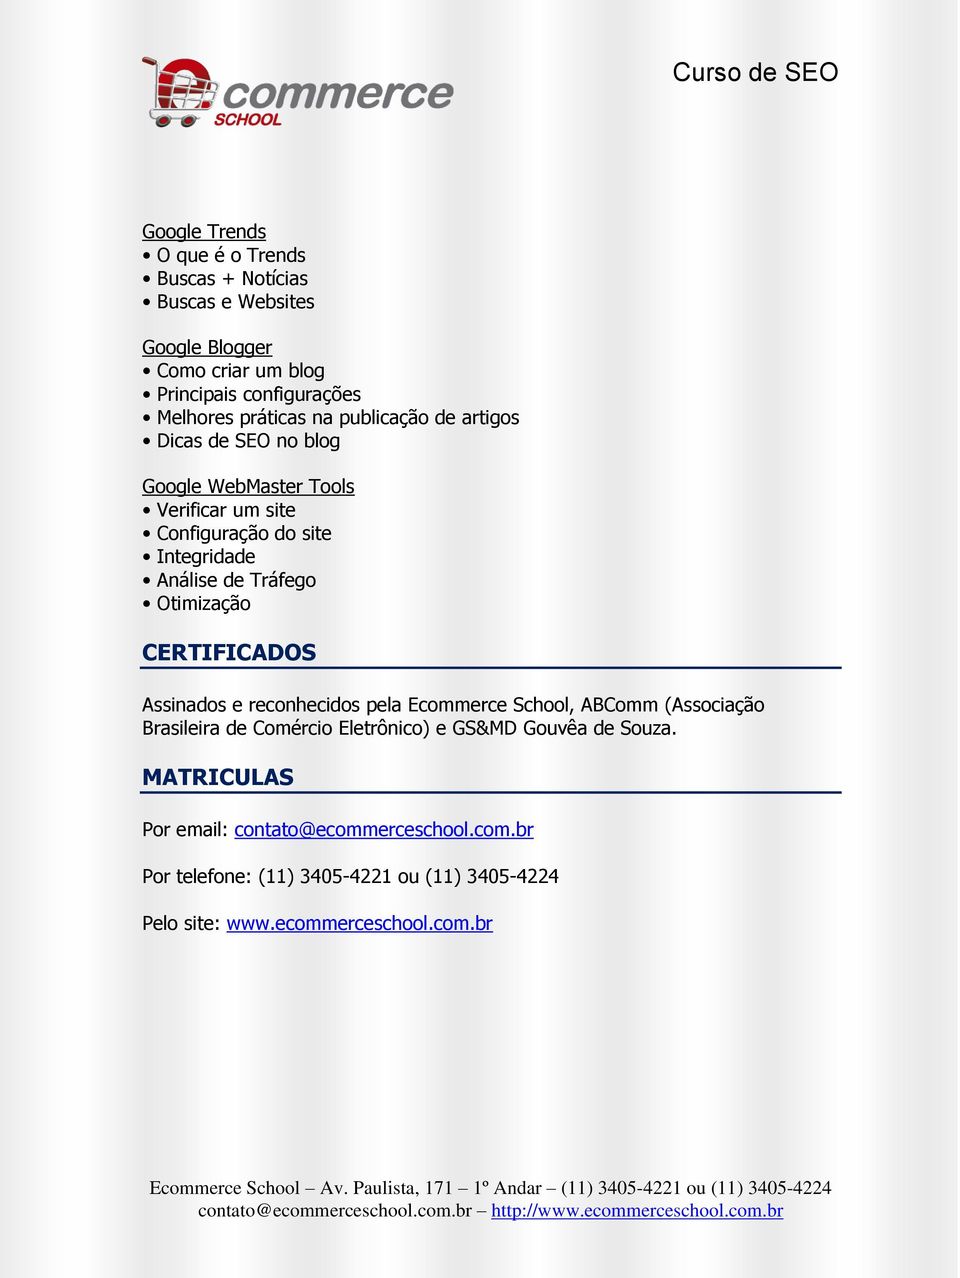 Tráfego Otimização CERTIFICADOS Assinados e reconhecidos pela Ecommerce School, ABComm (Associação Brasileira de Comércio Eletrônico) e GS&MD